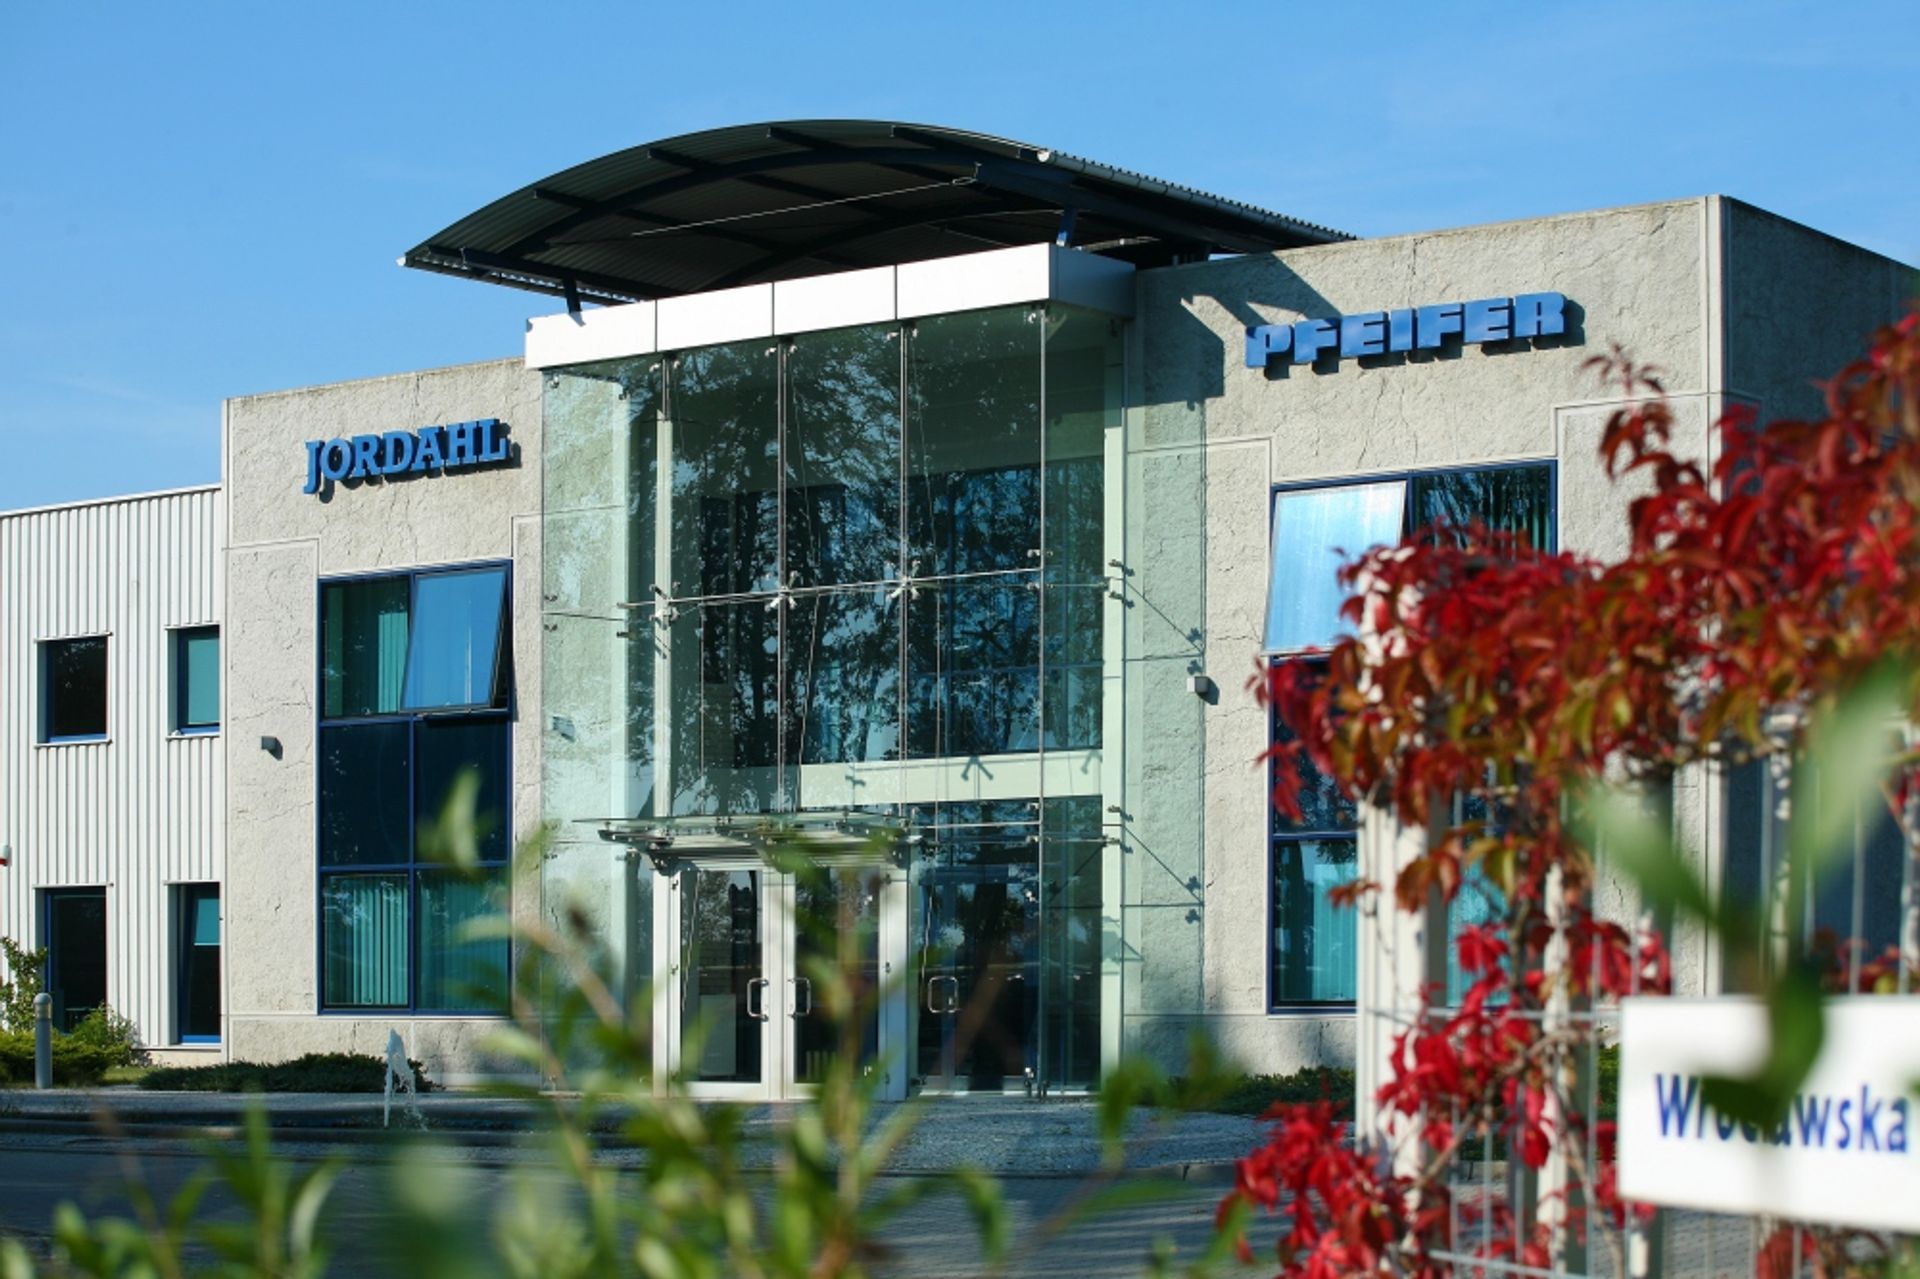  JORDAHL & PFEIFER rozbuduje fabrykę pod Wrocławiem